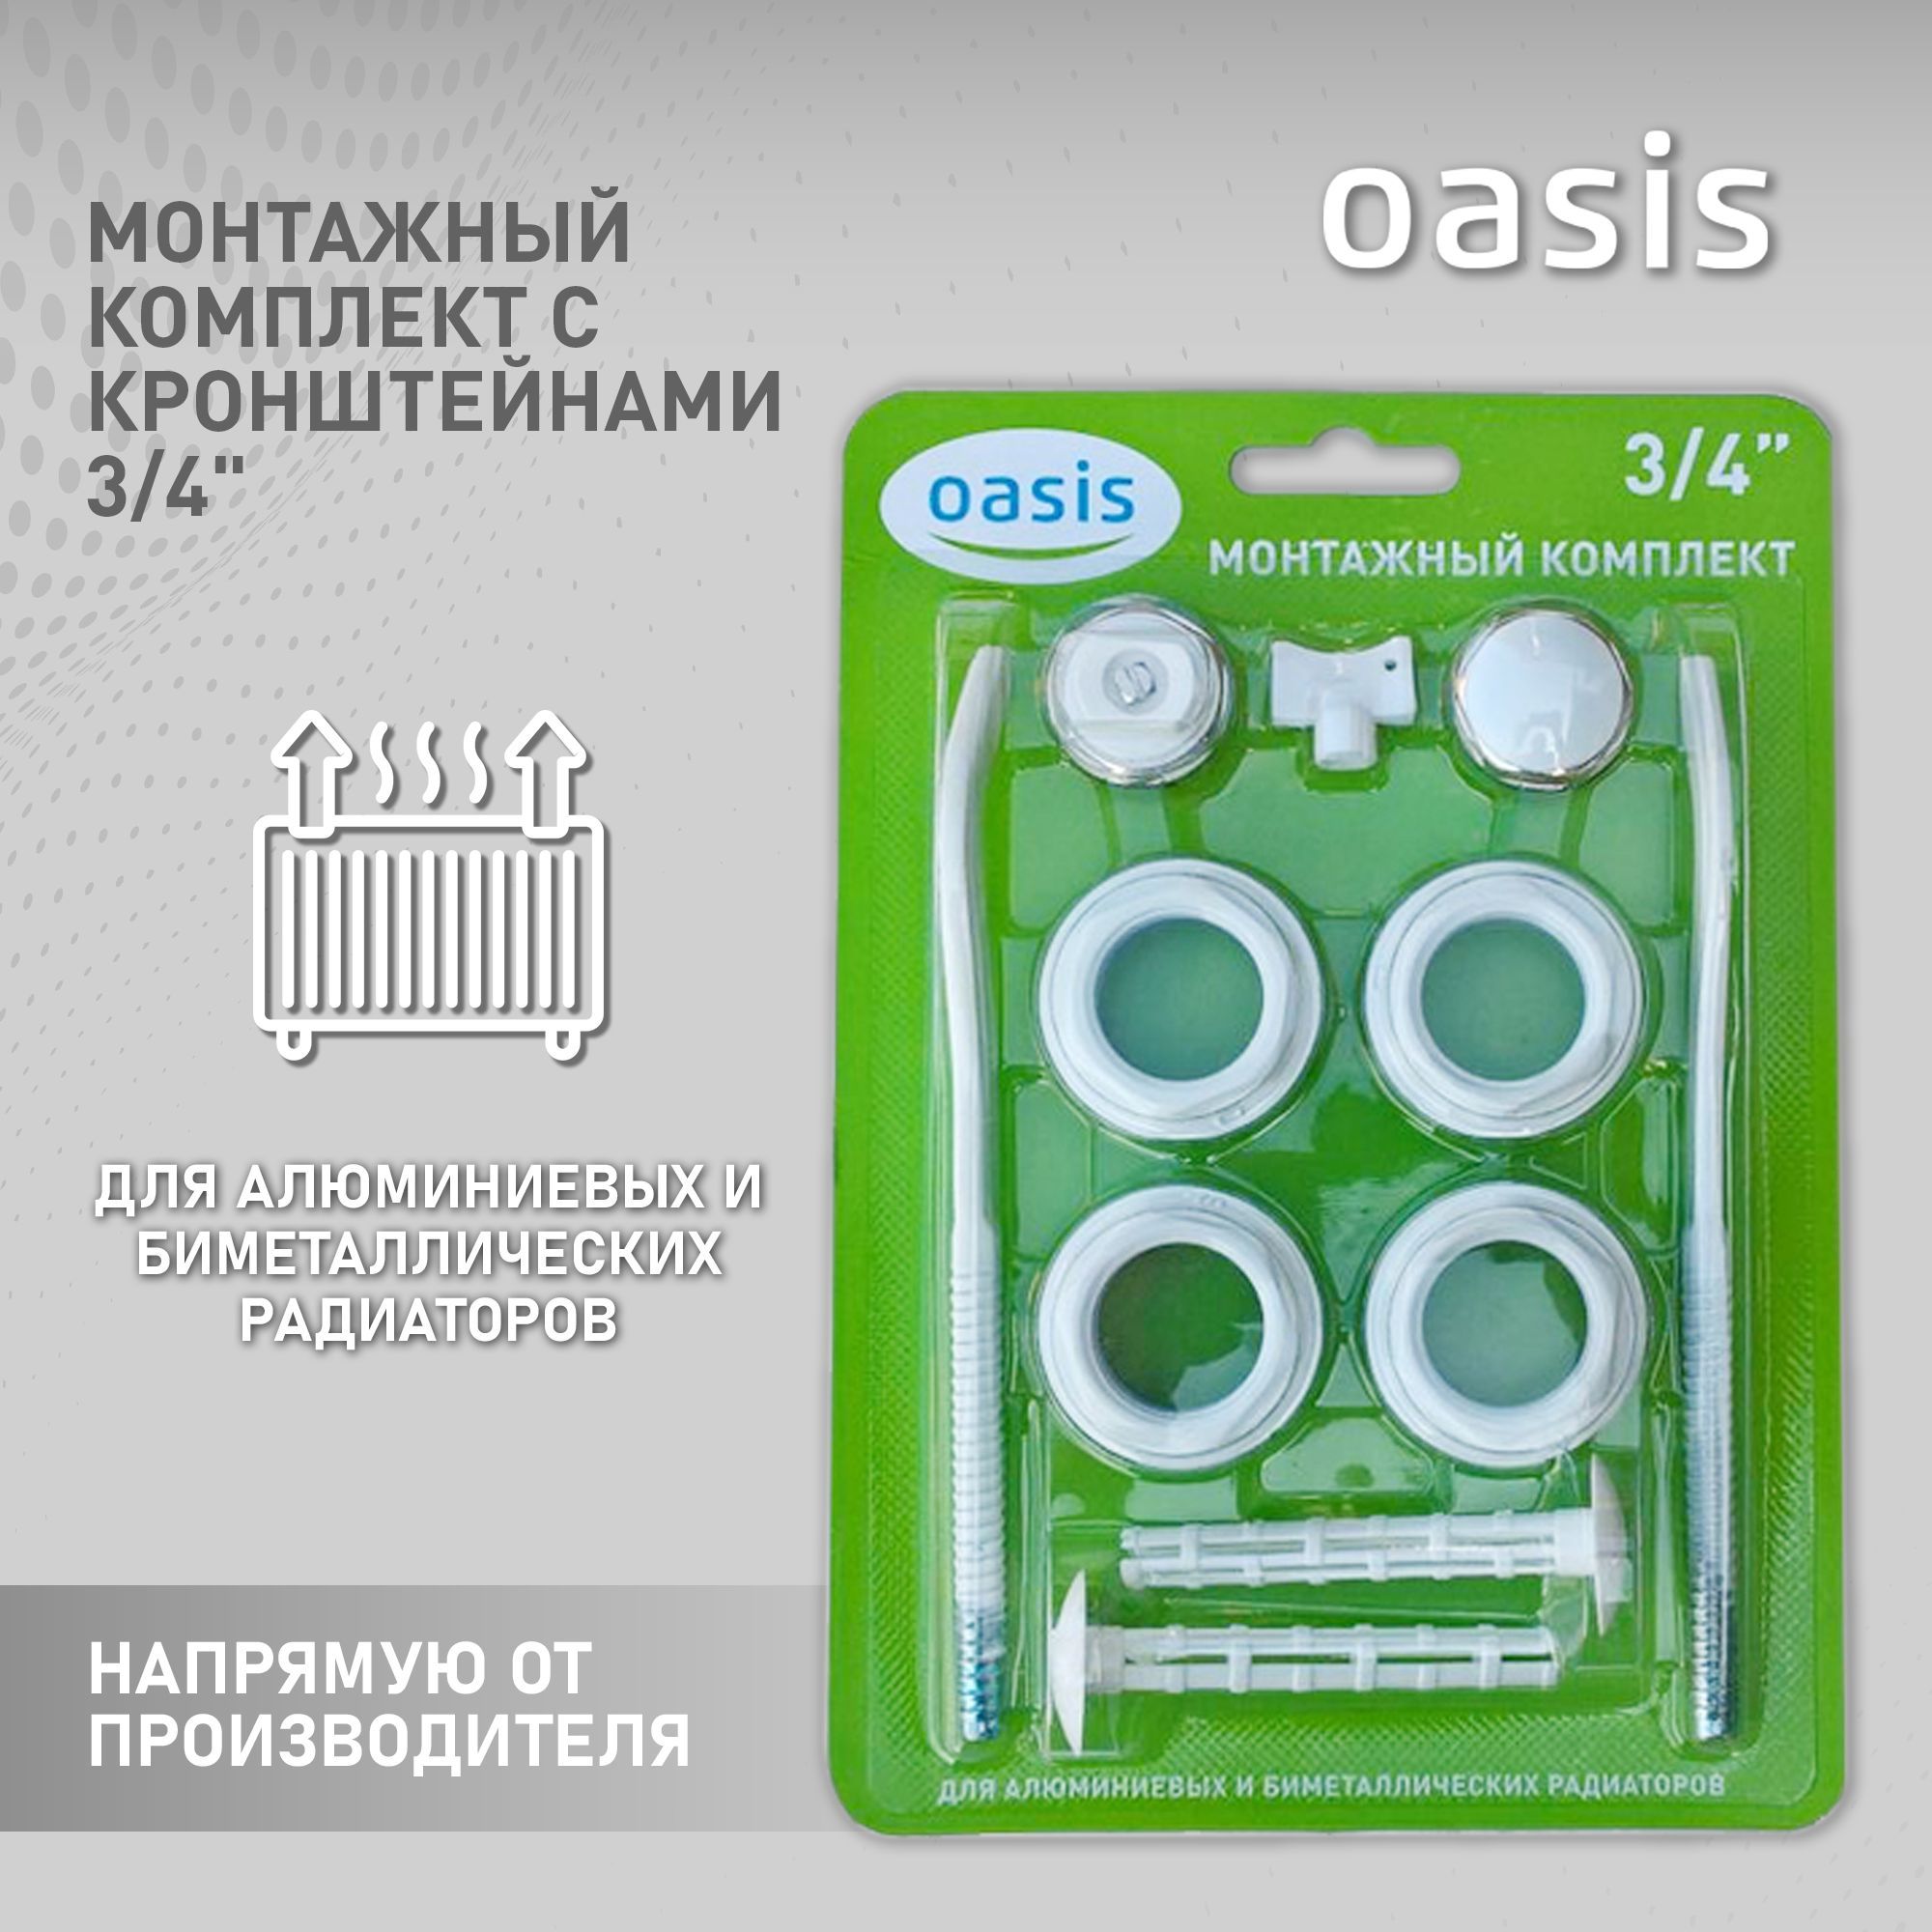 Монтажныйкомплектскронштейном3/4"дляалюминиевыхибиметаллическихрадиаторов